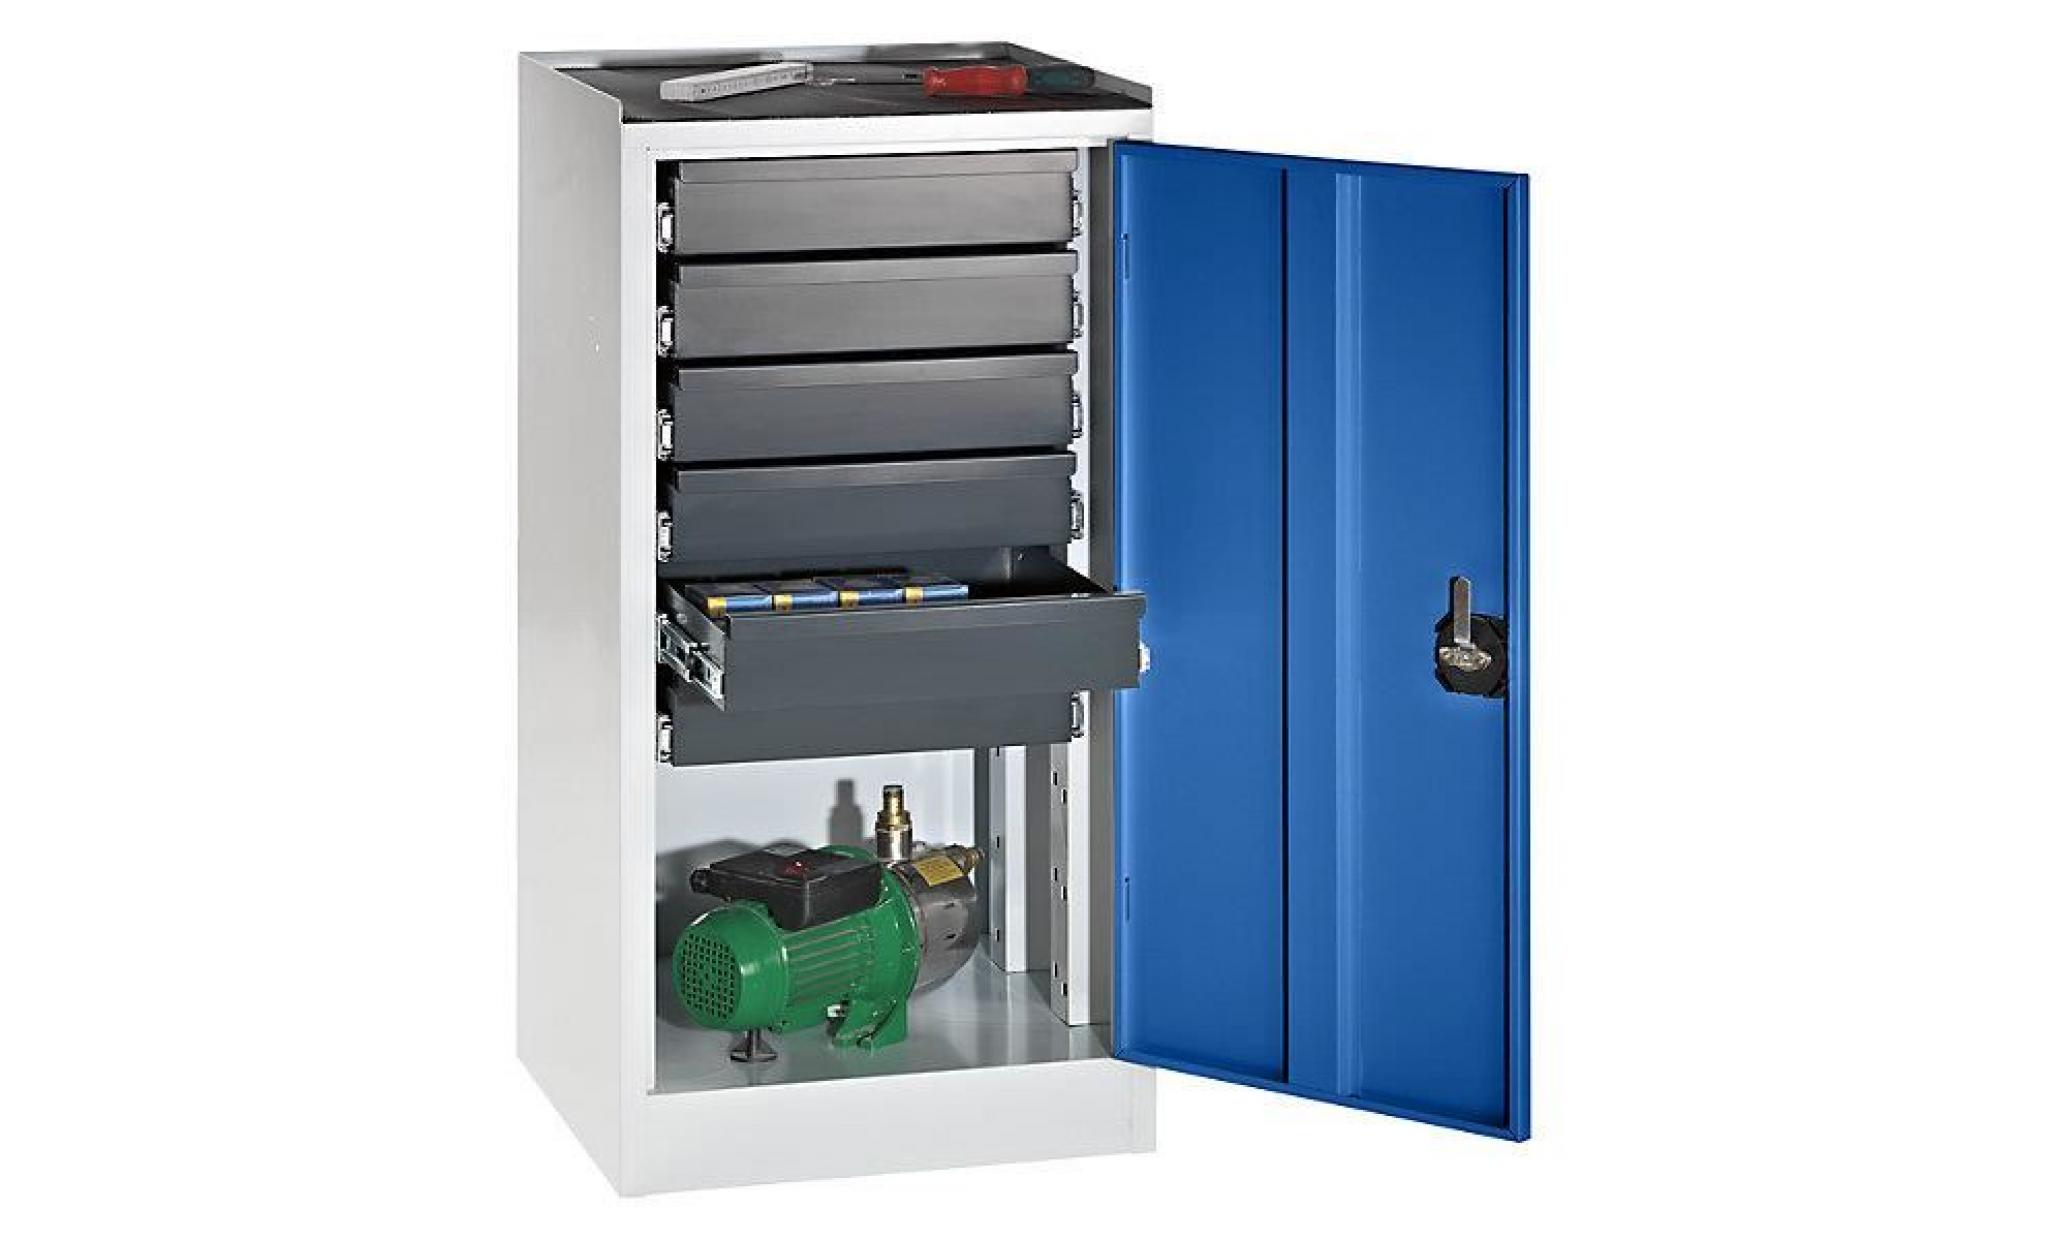 quipo armoire de service à outils   6 tiroirs porte bleu gentiane   armoire basse armoire d'atelier armoire métallique armoires